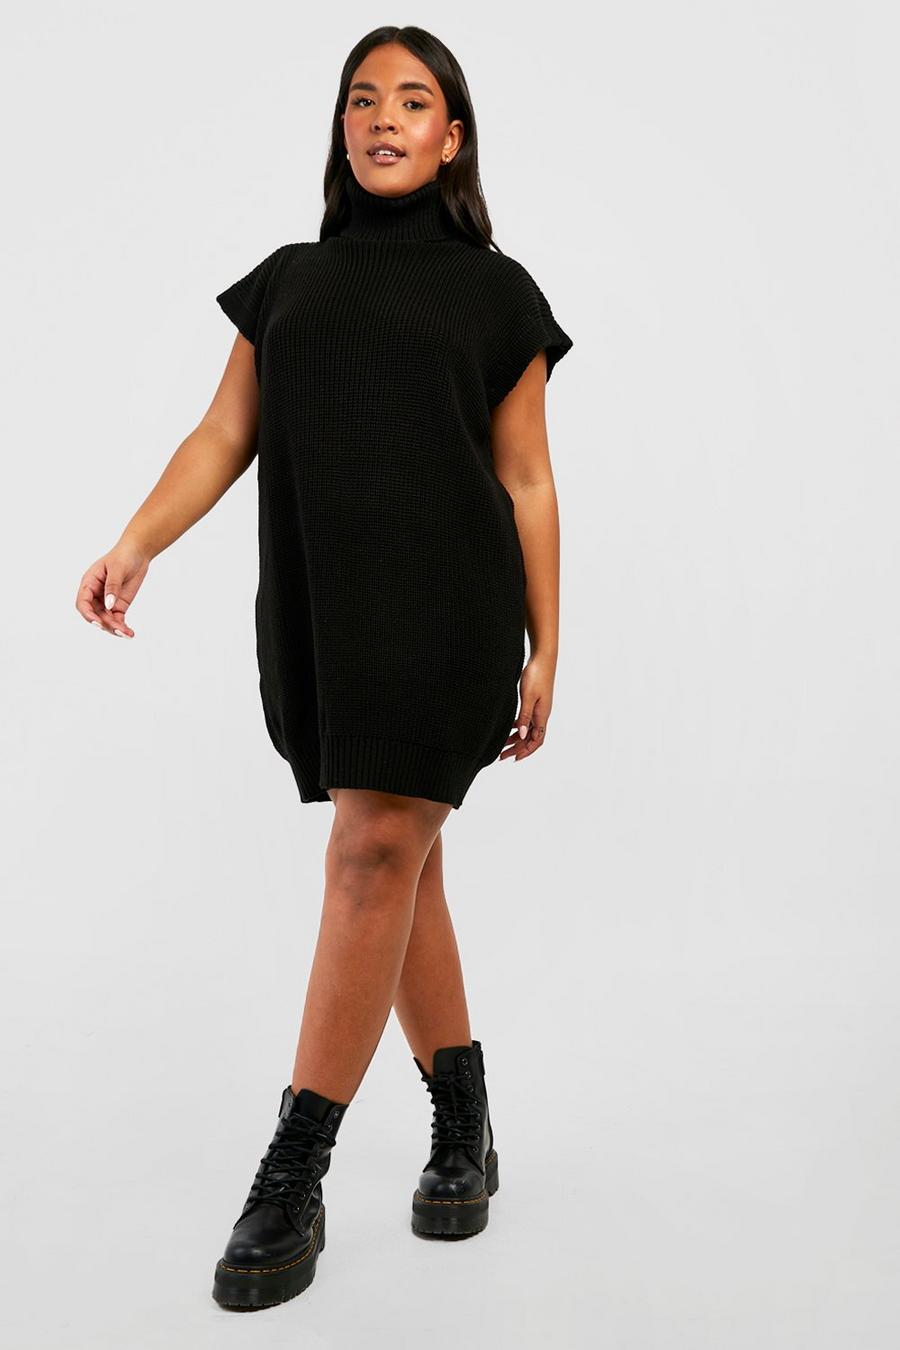 Black Plus Knitted Roll Neck Sleeveless Jumper Dress   